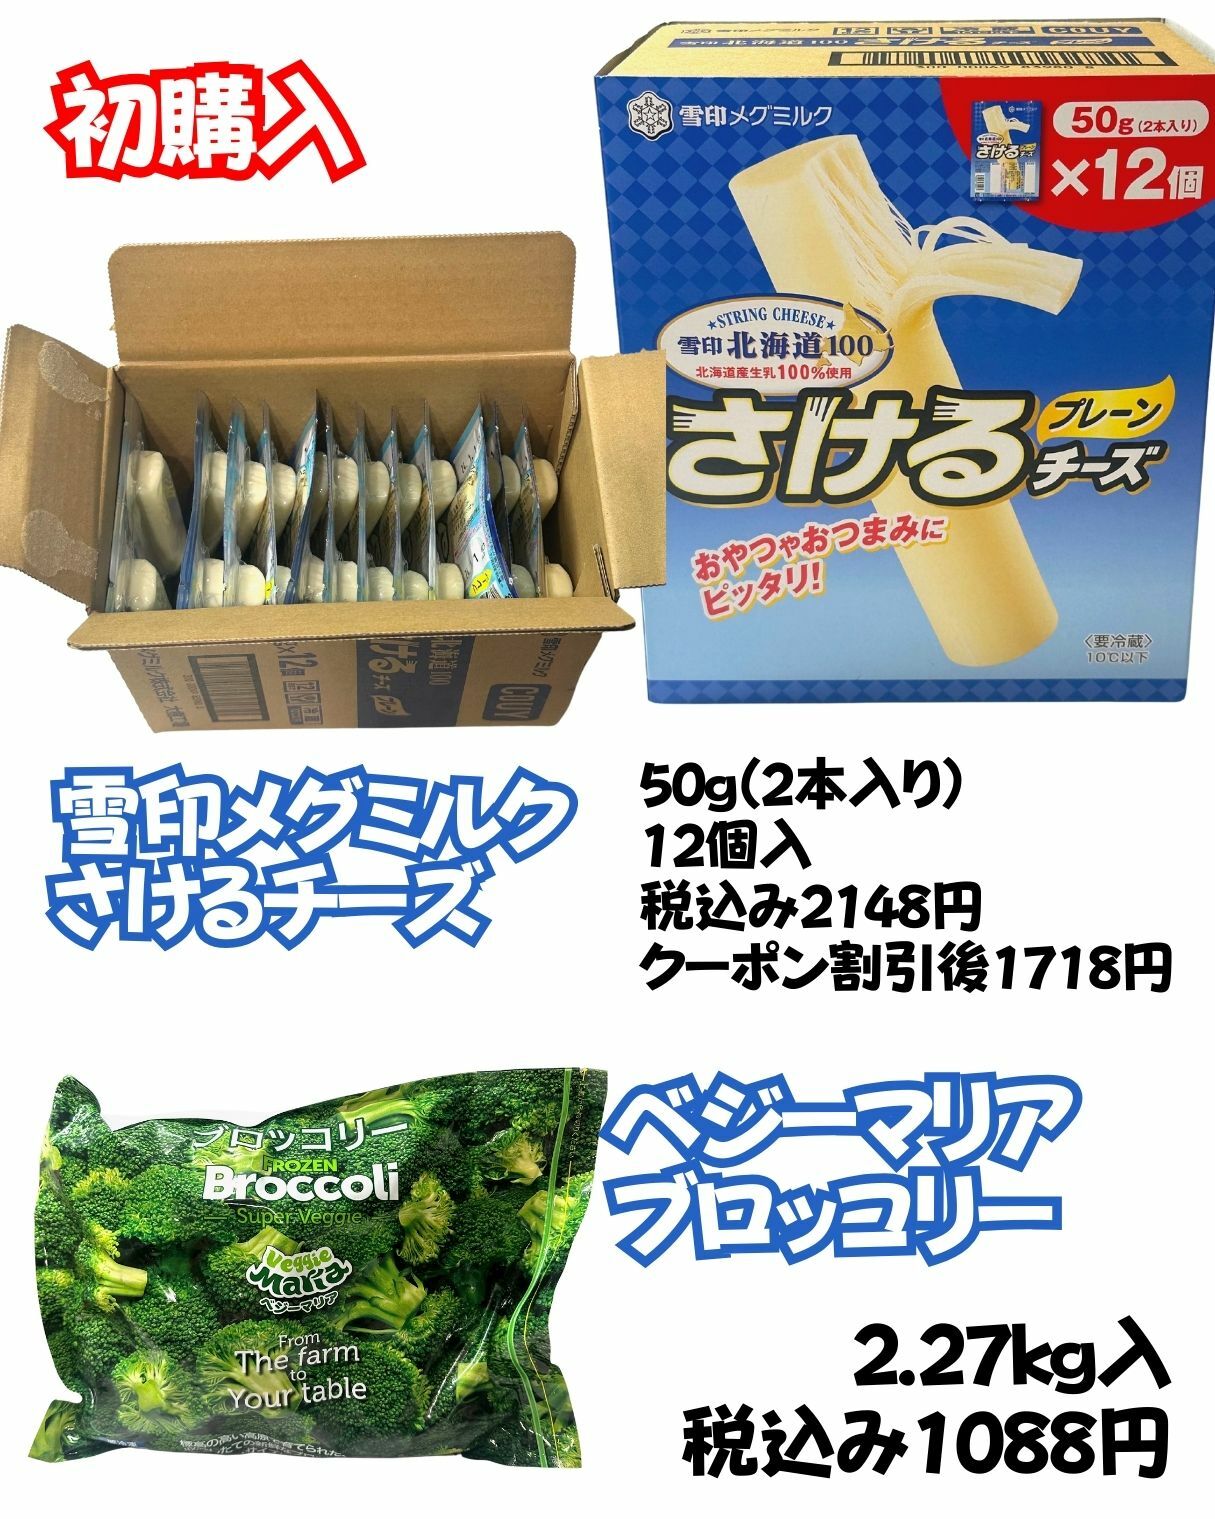 【コストコ】雪印メグミルクさけるチーズとベジーマリアブロッコリー